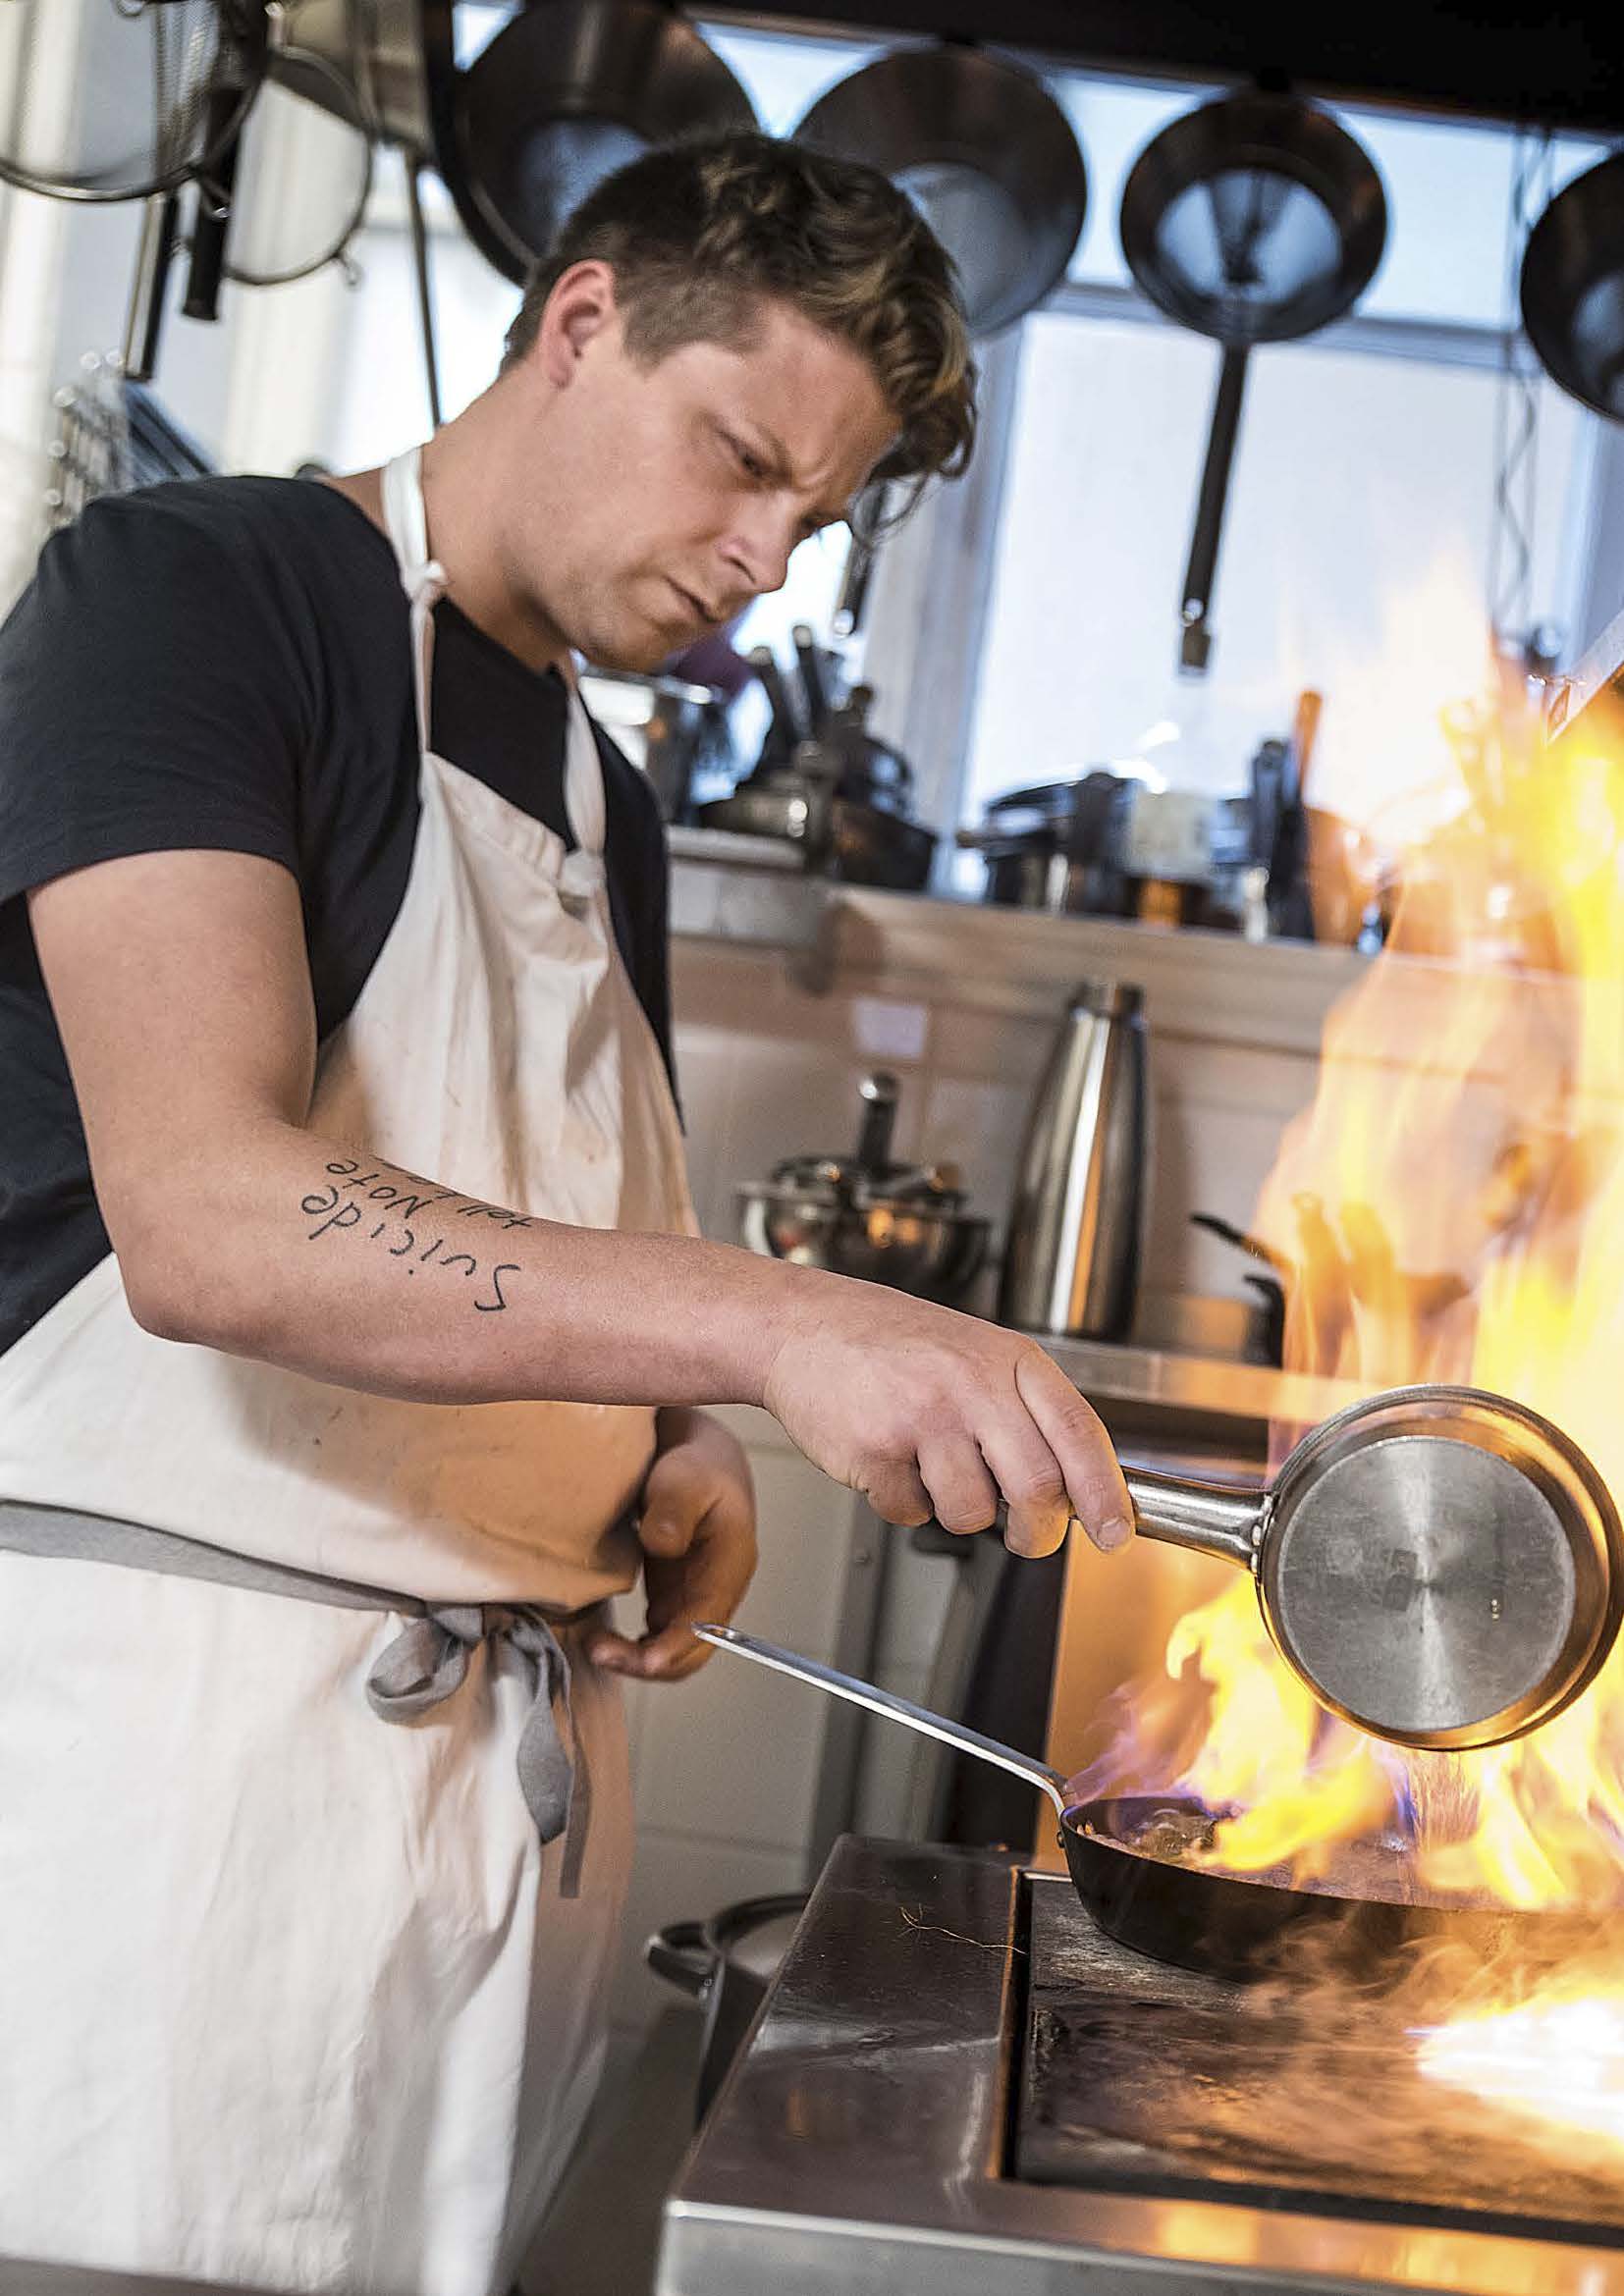 Joakim Almqvist befinner sig i restaurangköket och lagar mat. Från kastrullen stiger lågor när han flamberar något.